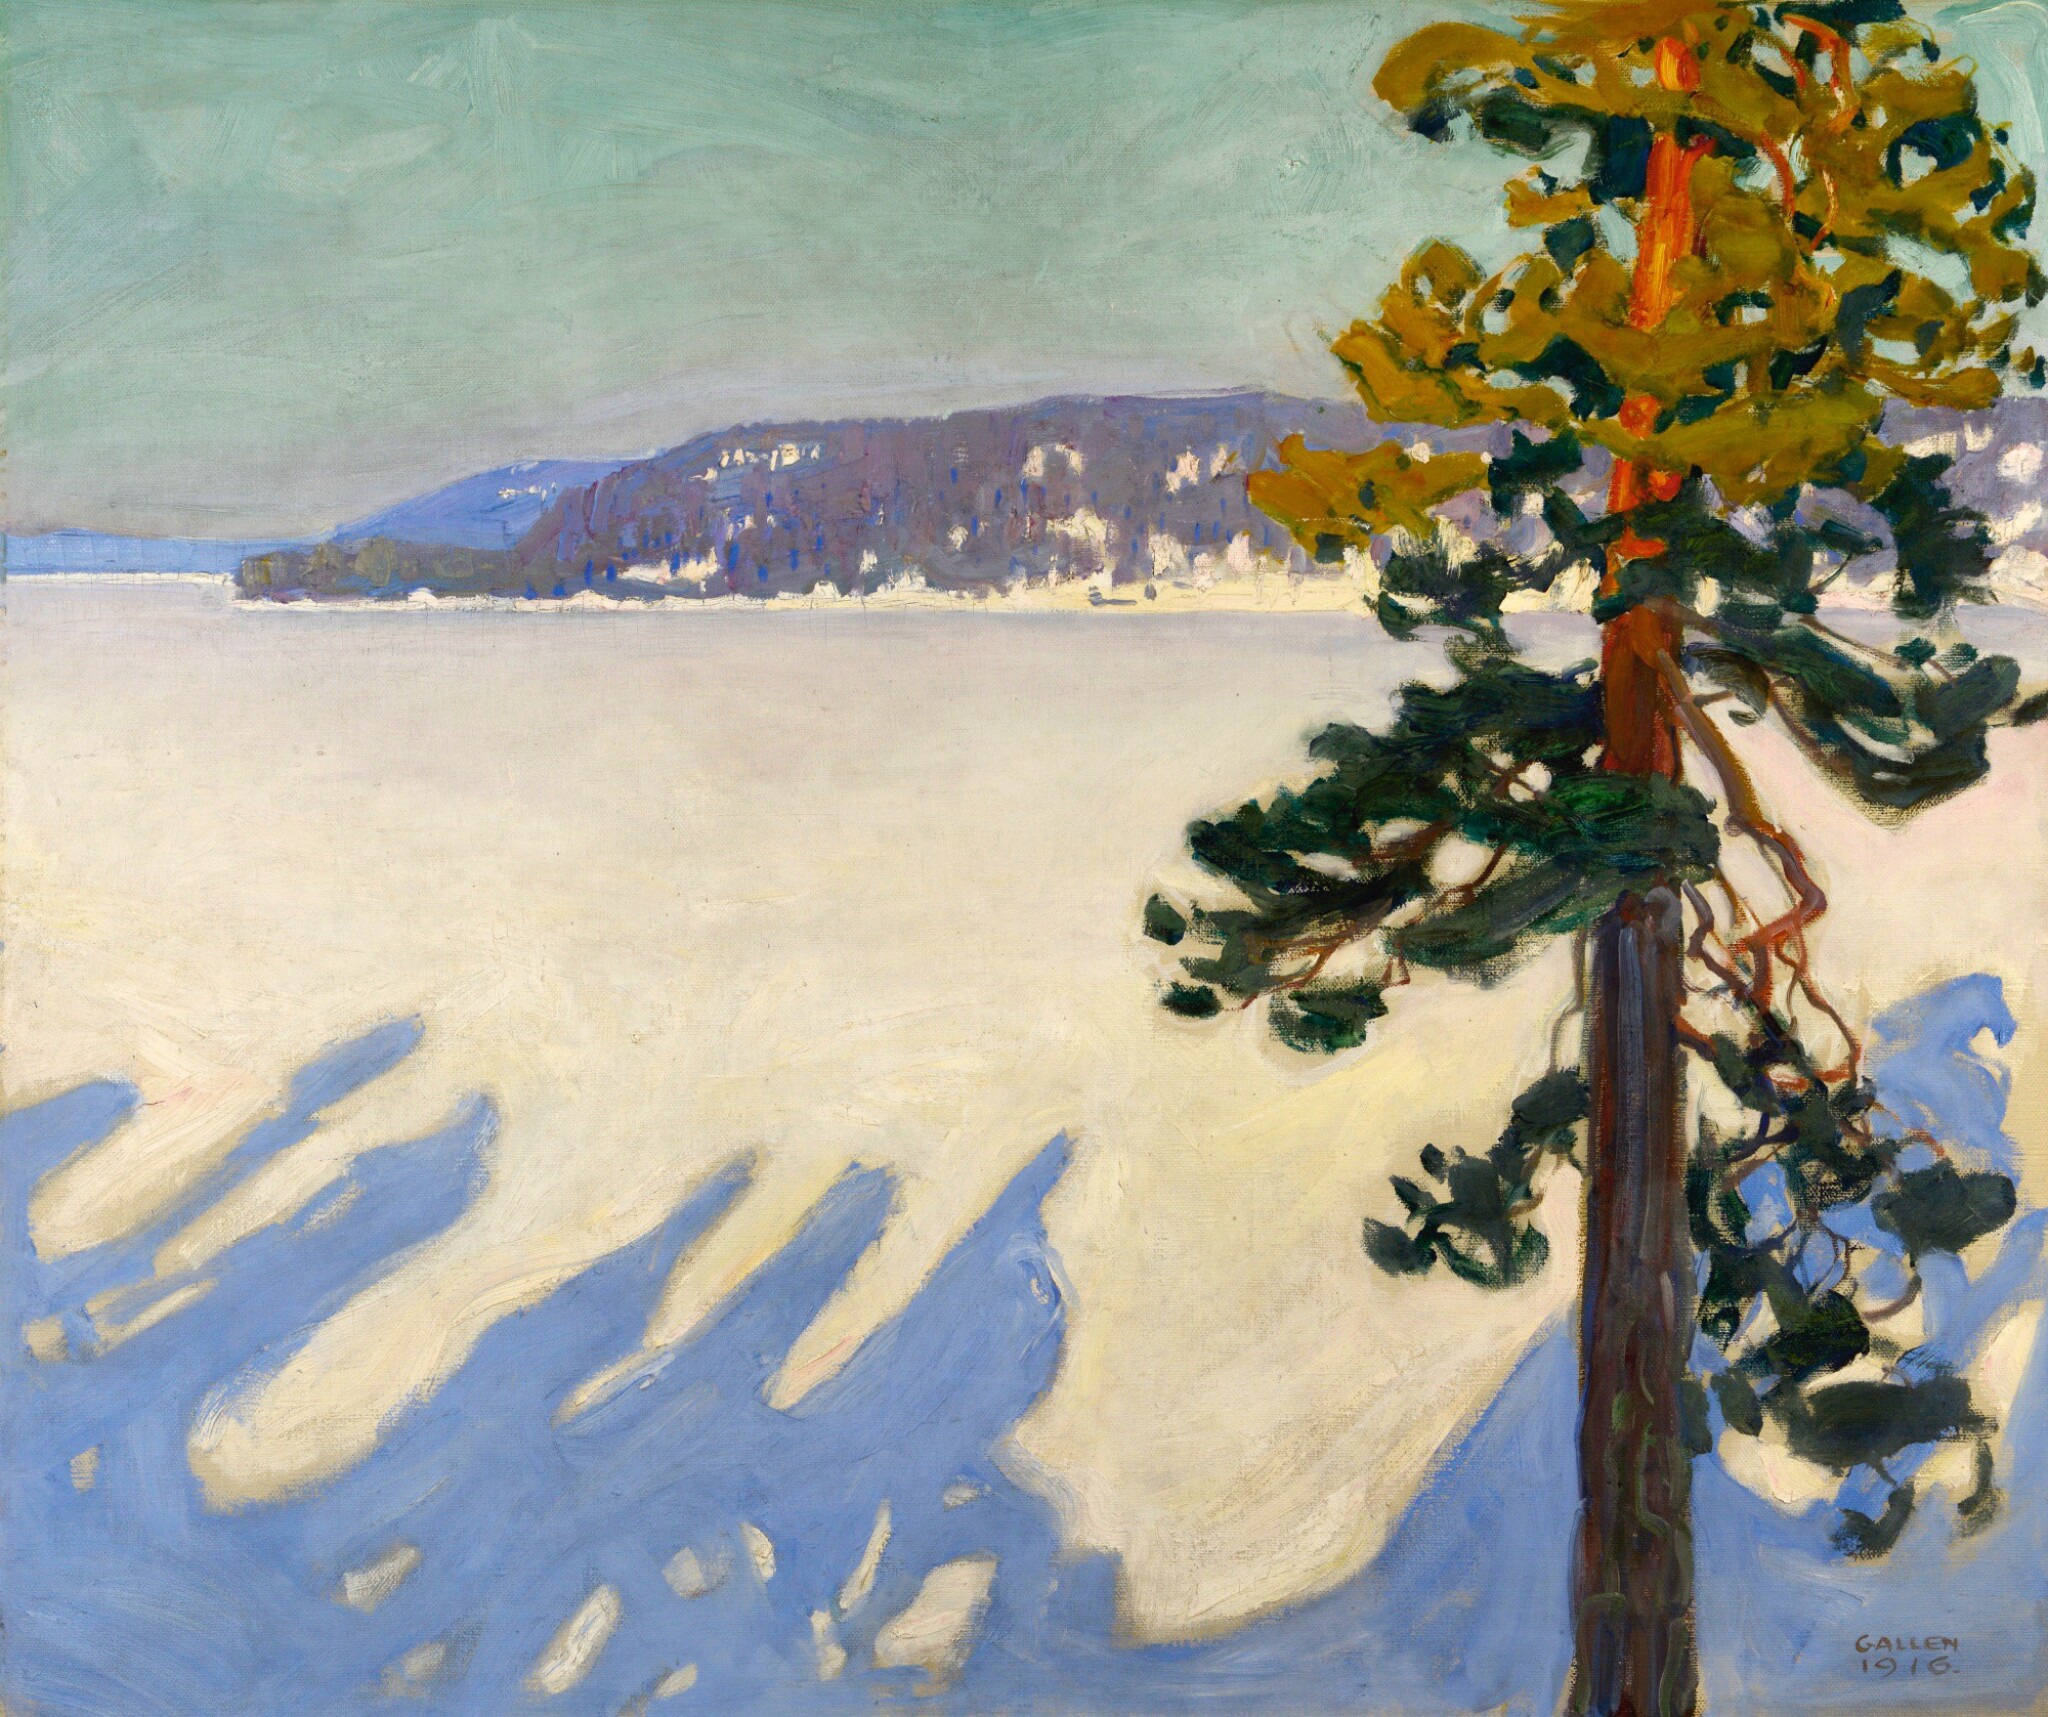 Het Ruovesimeer in de winter by Akseli Gallen-Kallela - 1916 - 102 x 119,5 cm 